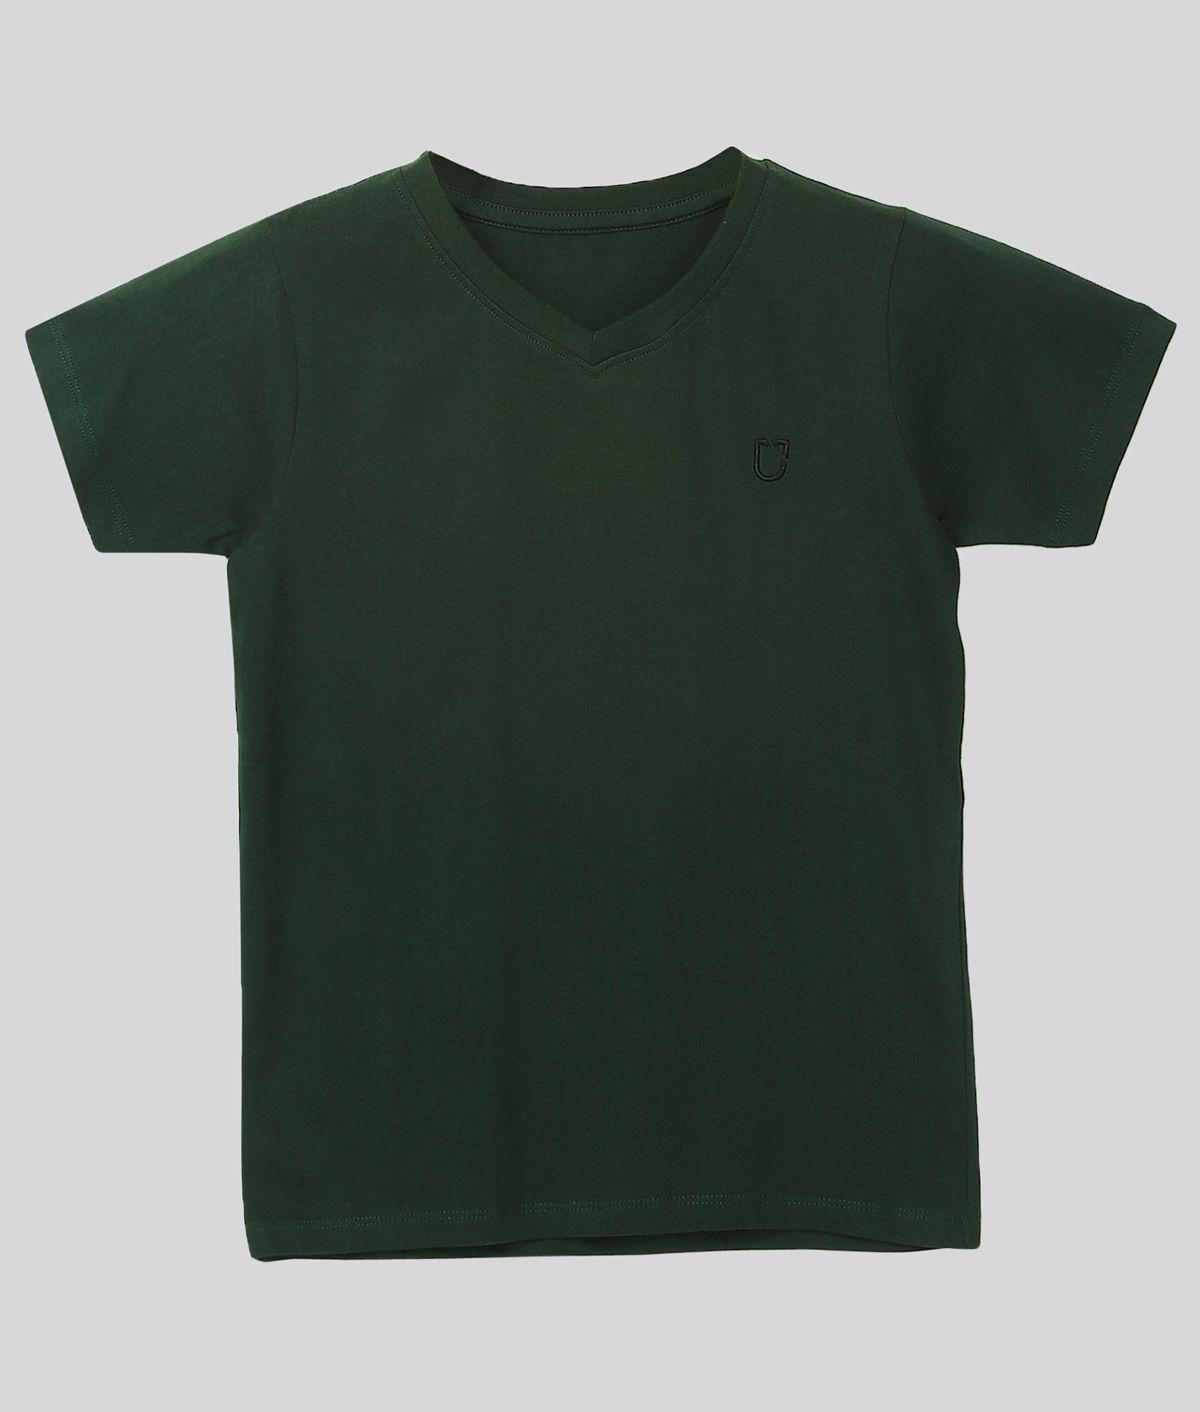 Urbano Juniors - Dark Green Cotton Boy's T-Shirt ( Pack of 1 )